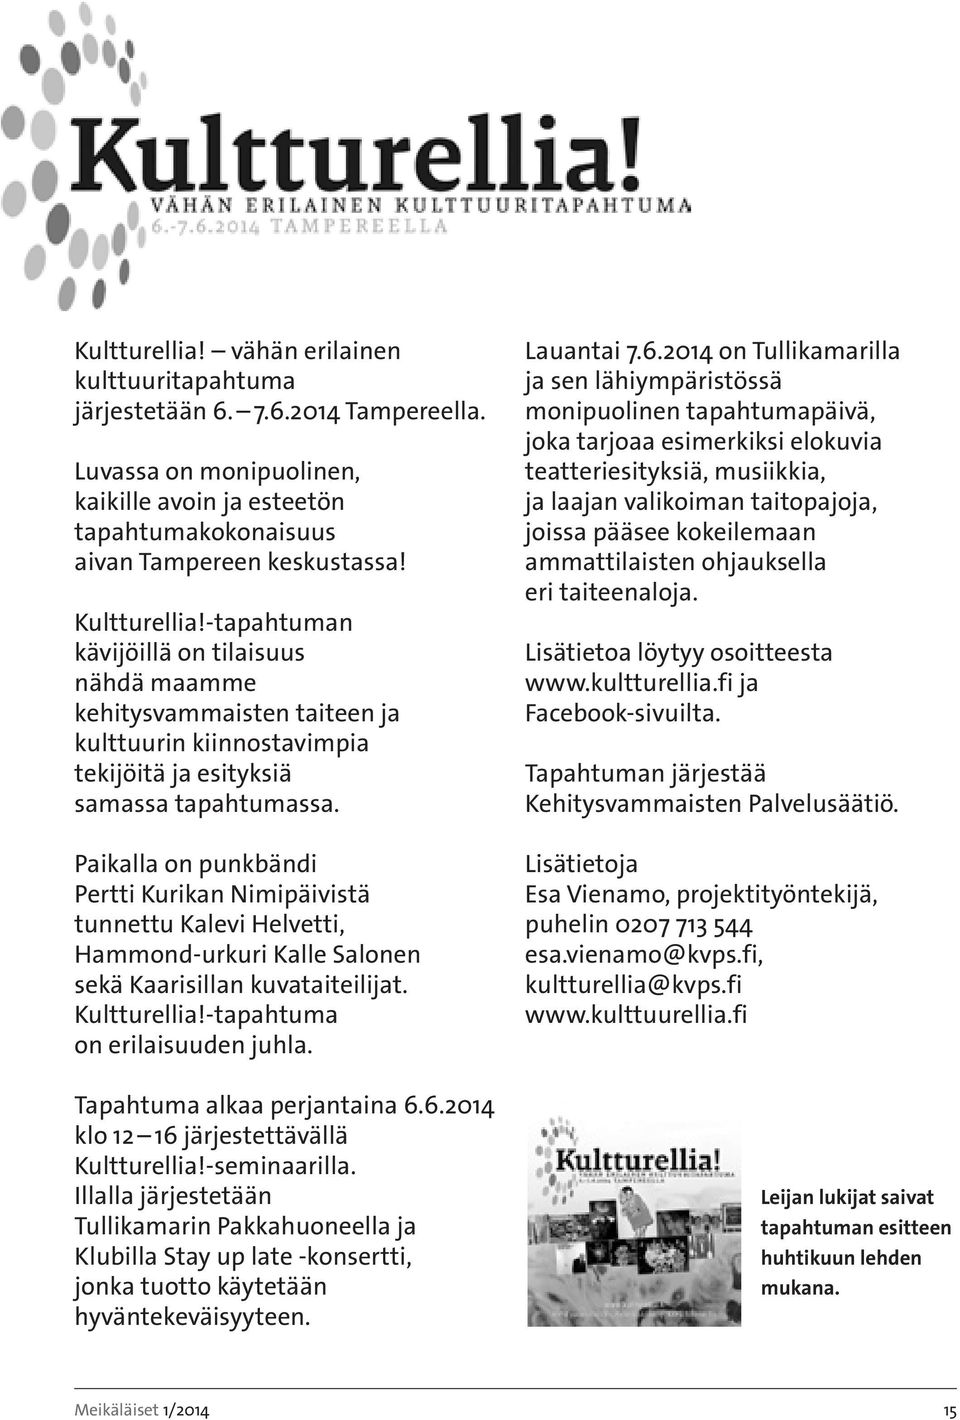 Paikalla on punkbändi Pertti Kurikan Nimipäivistä tunnettu Kalevi Helvetti, Hammond-urkuri Kalle Salonen sekä Kaarisillan kuvataiteilijat. Kultturellia!-tapahtuma on erilaisuuden juhla.